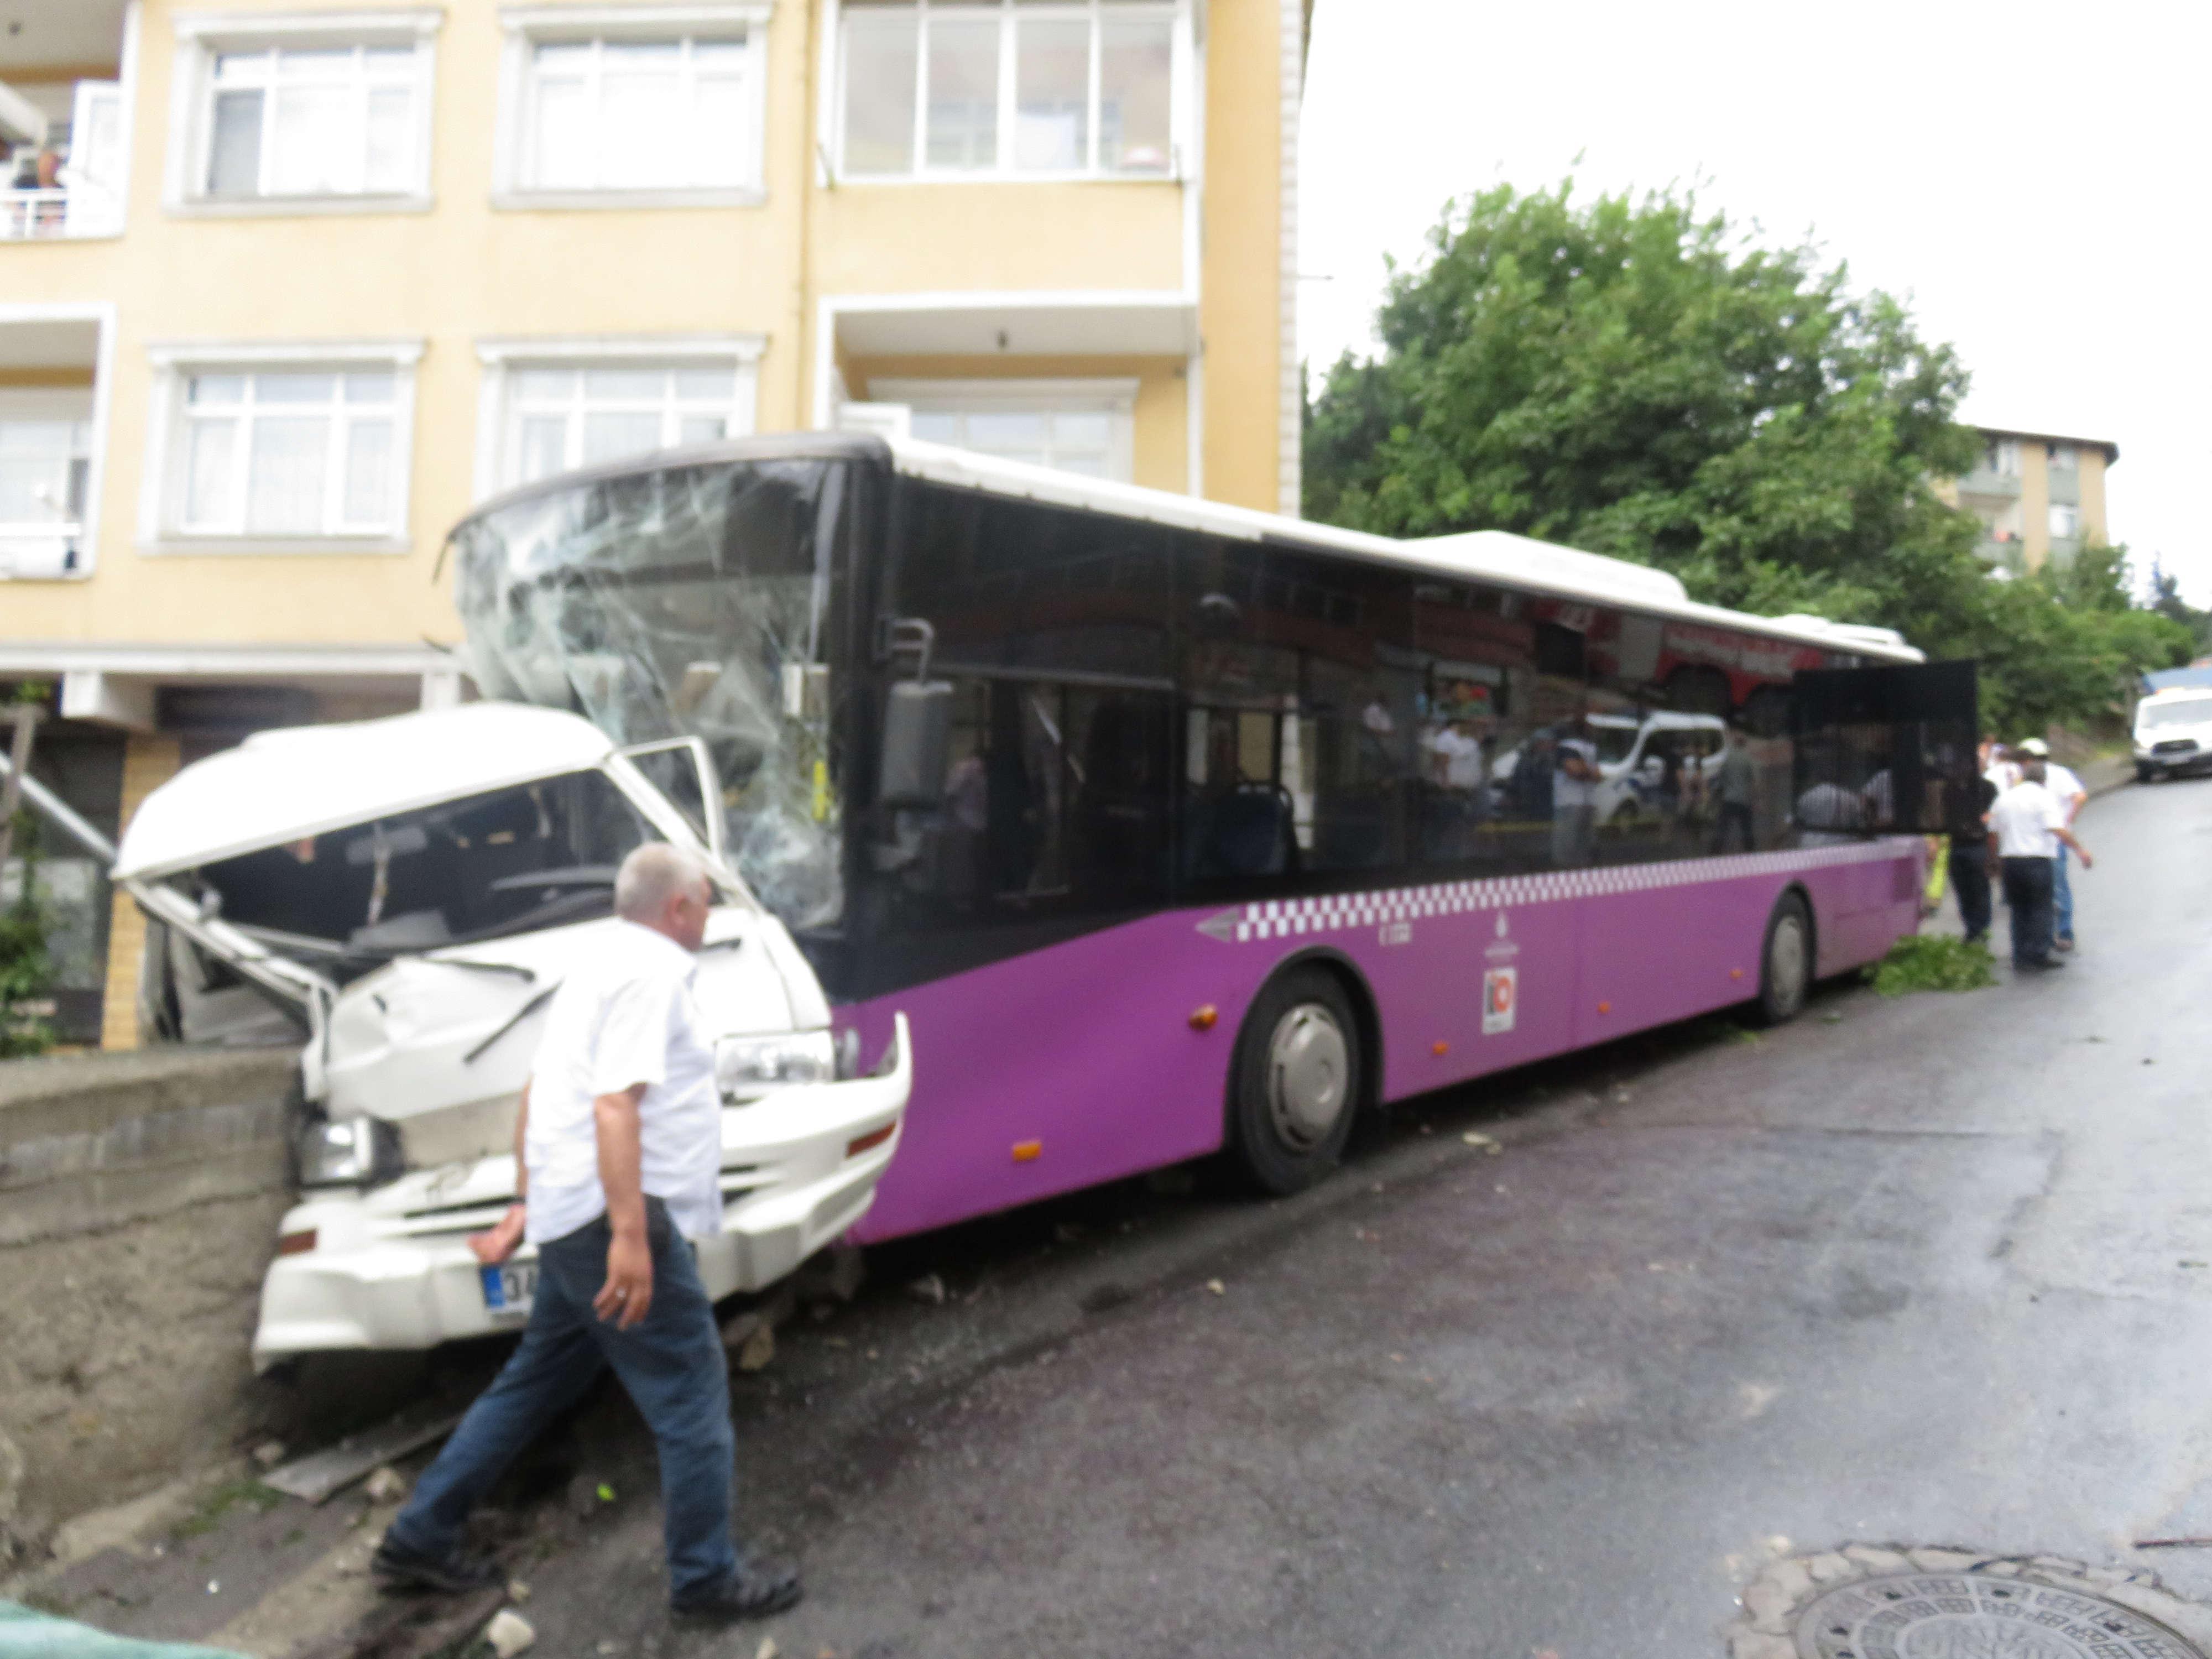 Üsküdarda özel halk otobüsü minibüse çarptı: 4 yaralı